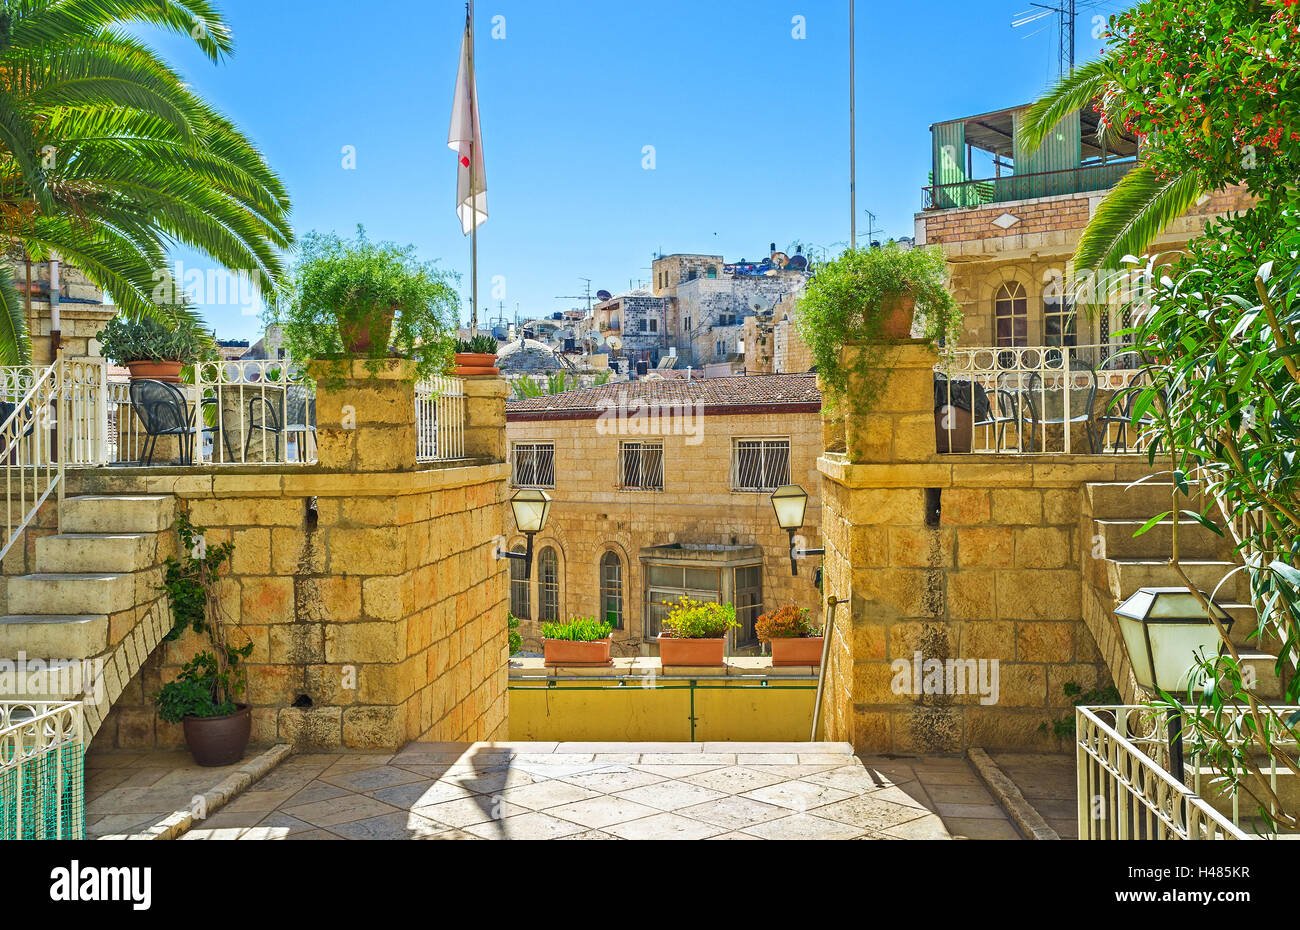 Le piante verdi sono il miglior decorazione per i palazzi in pietra di vecchia città, Gerusalemme, Israele. Foto Stock